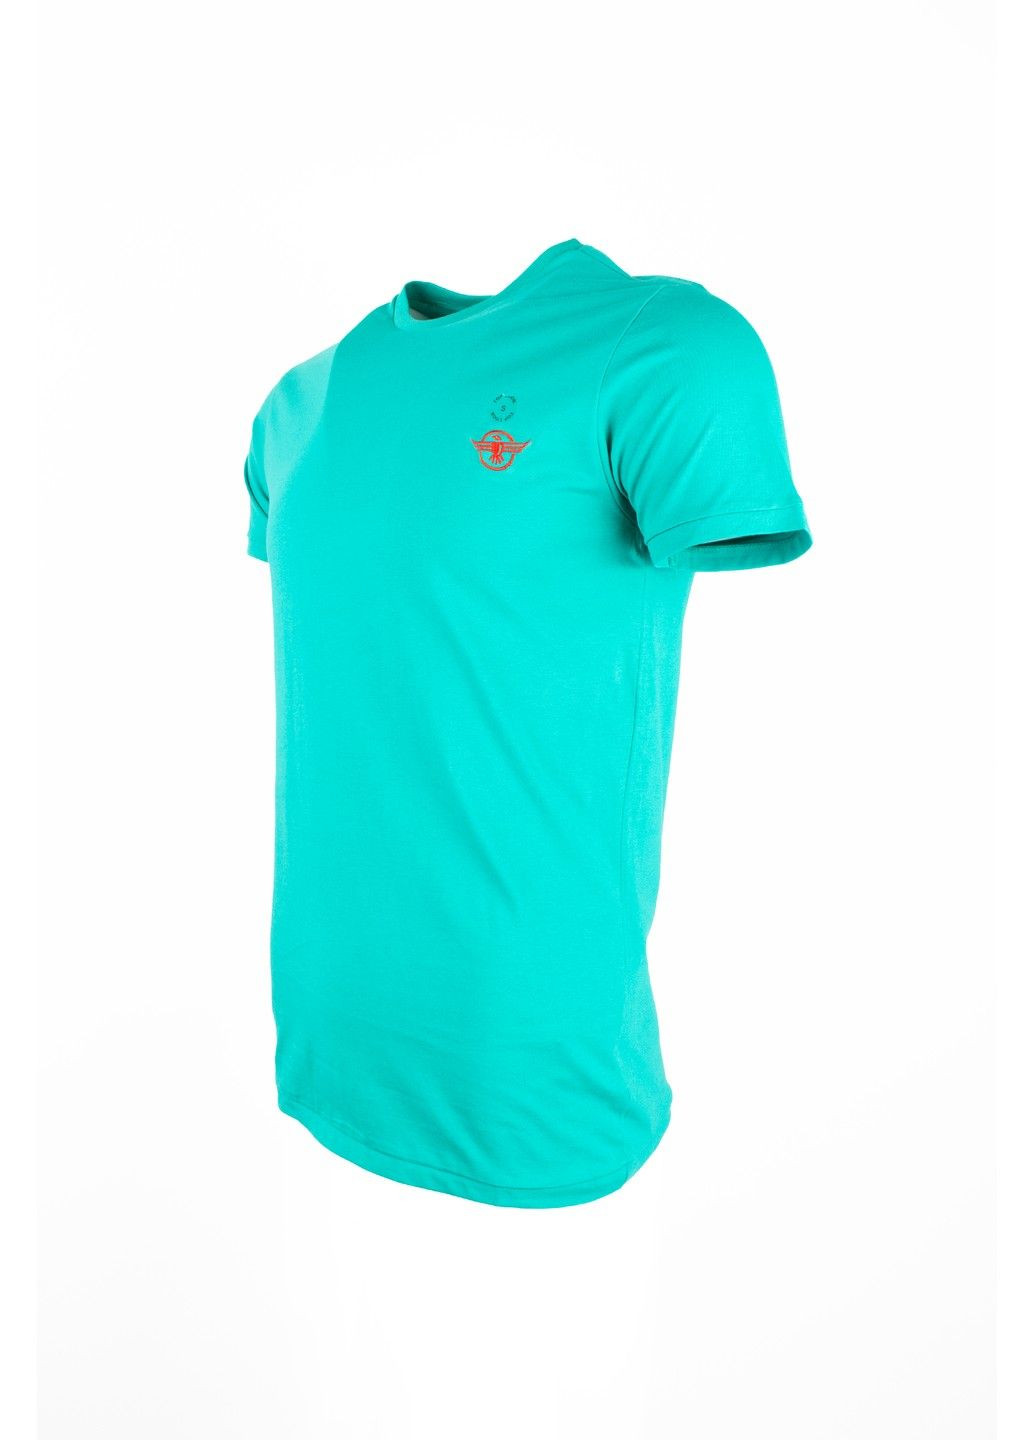 Бирюзовая футболка мужская top look бирюзовая 070821-001547 No Brand